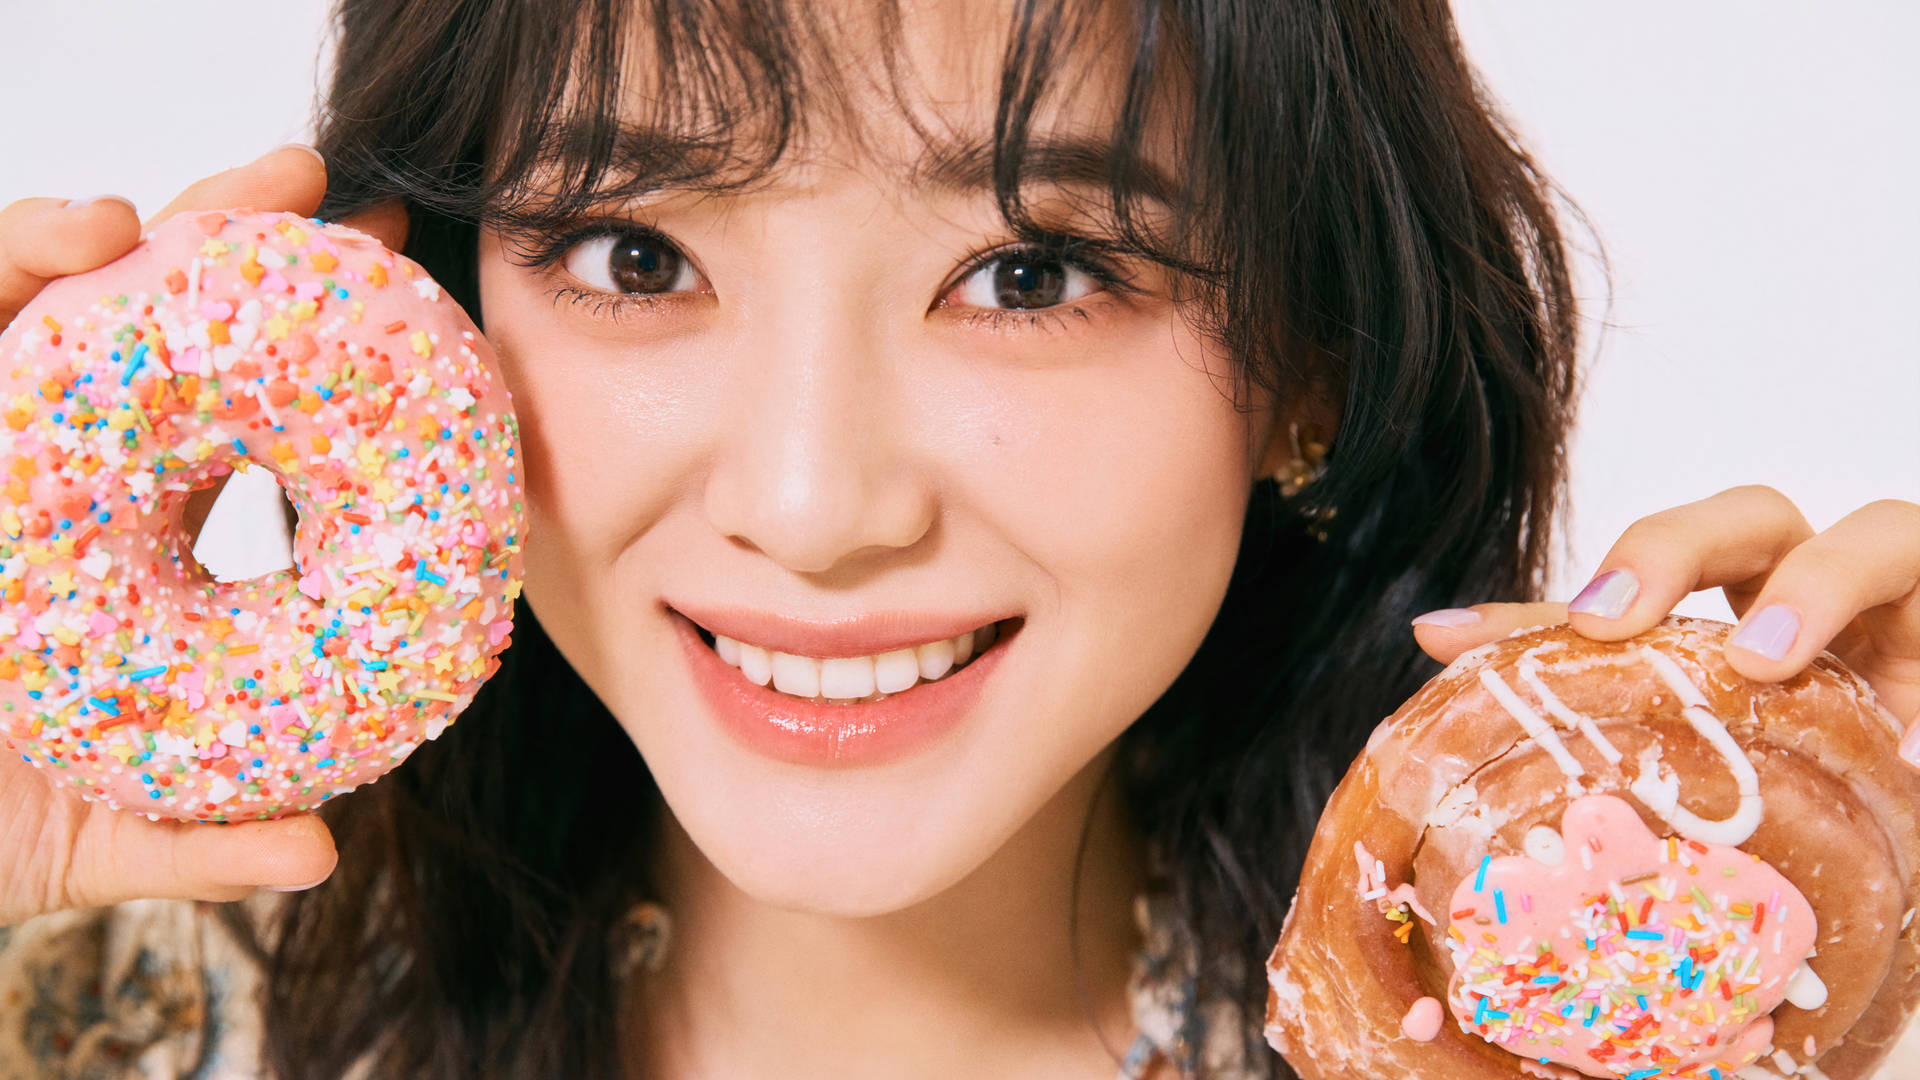 Kim Se Jeong And Donuts